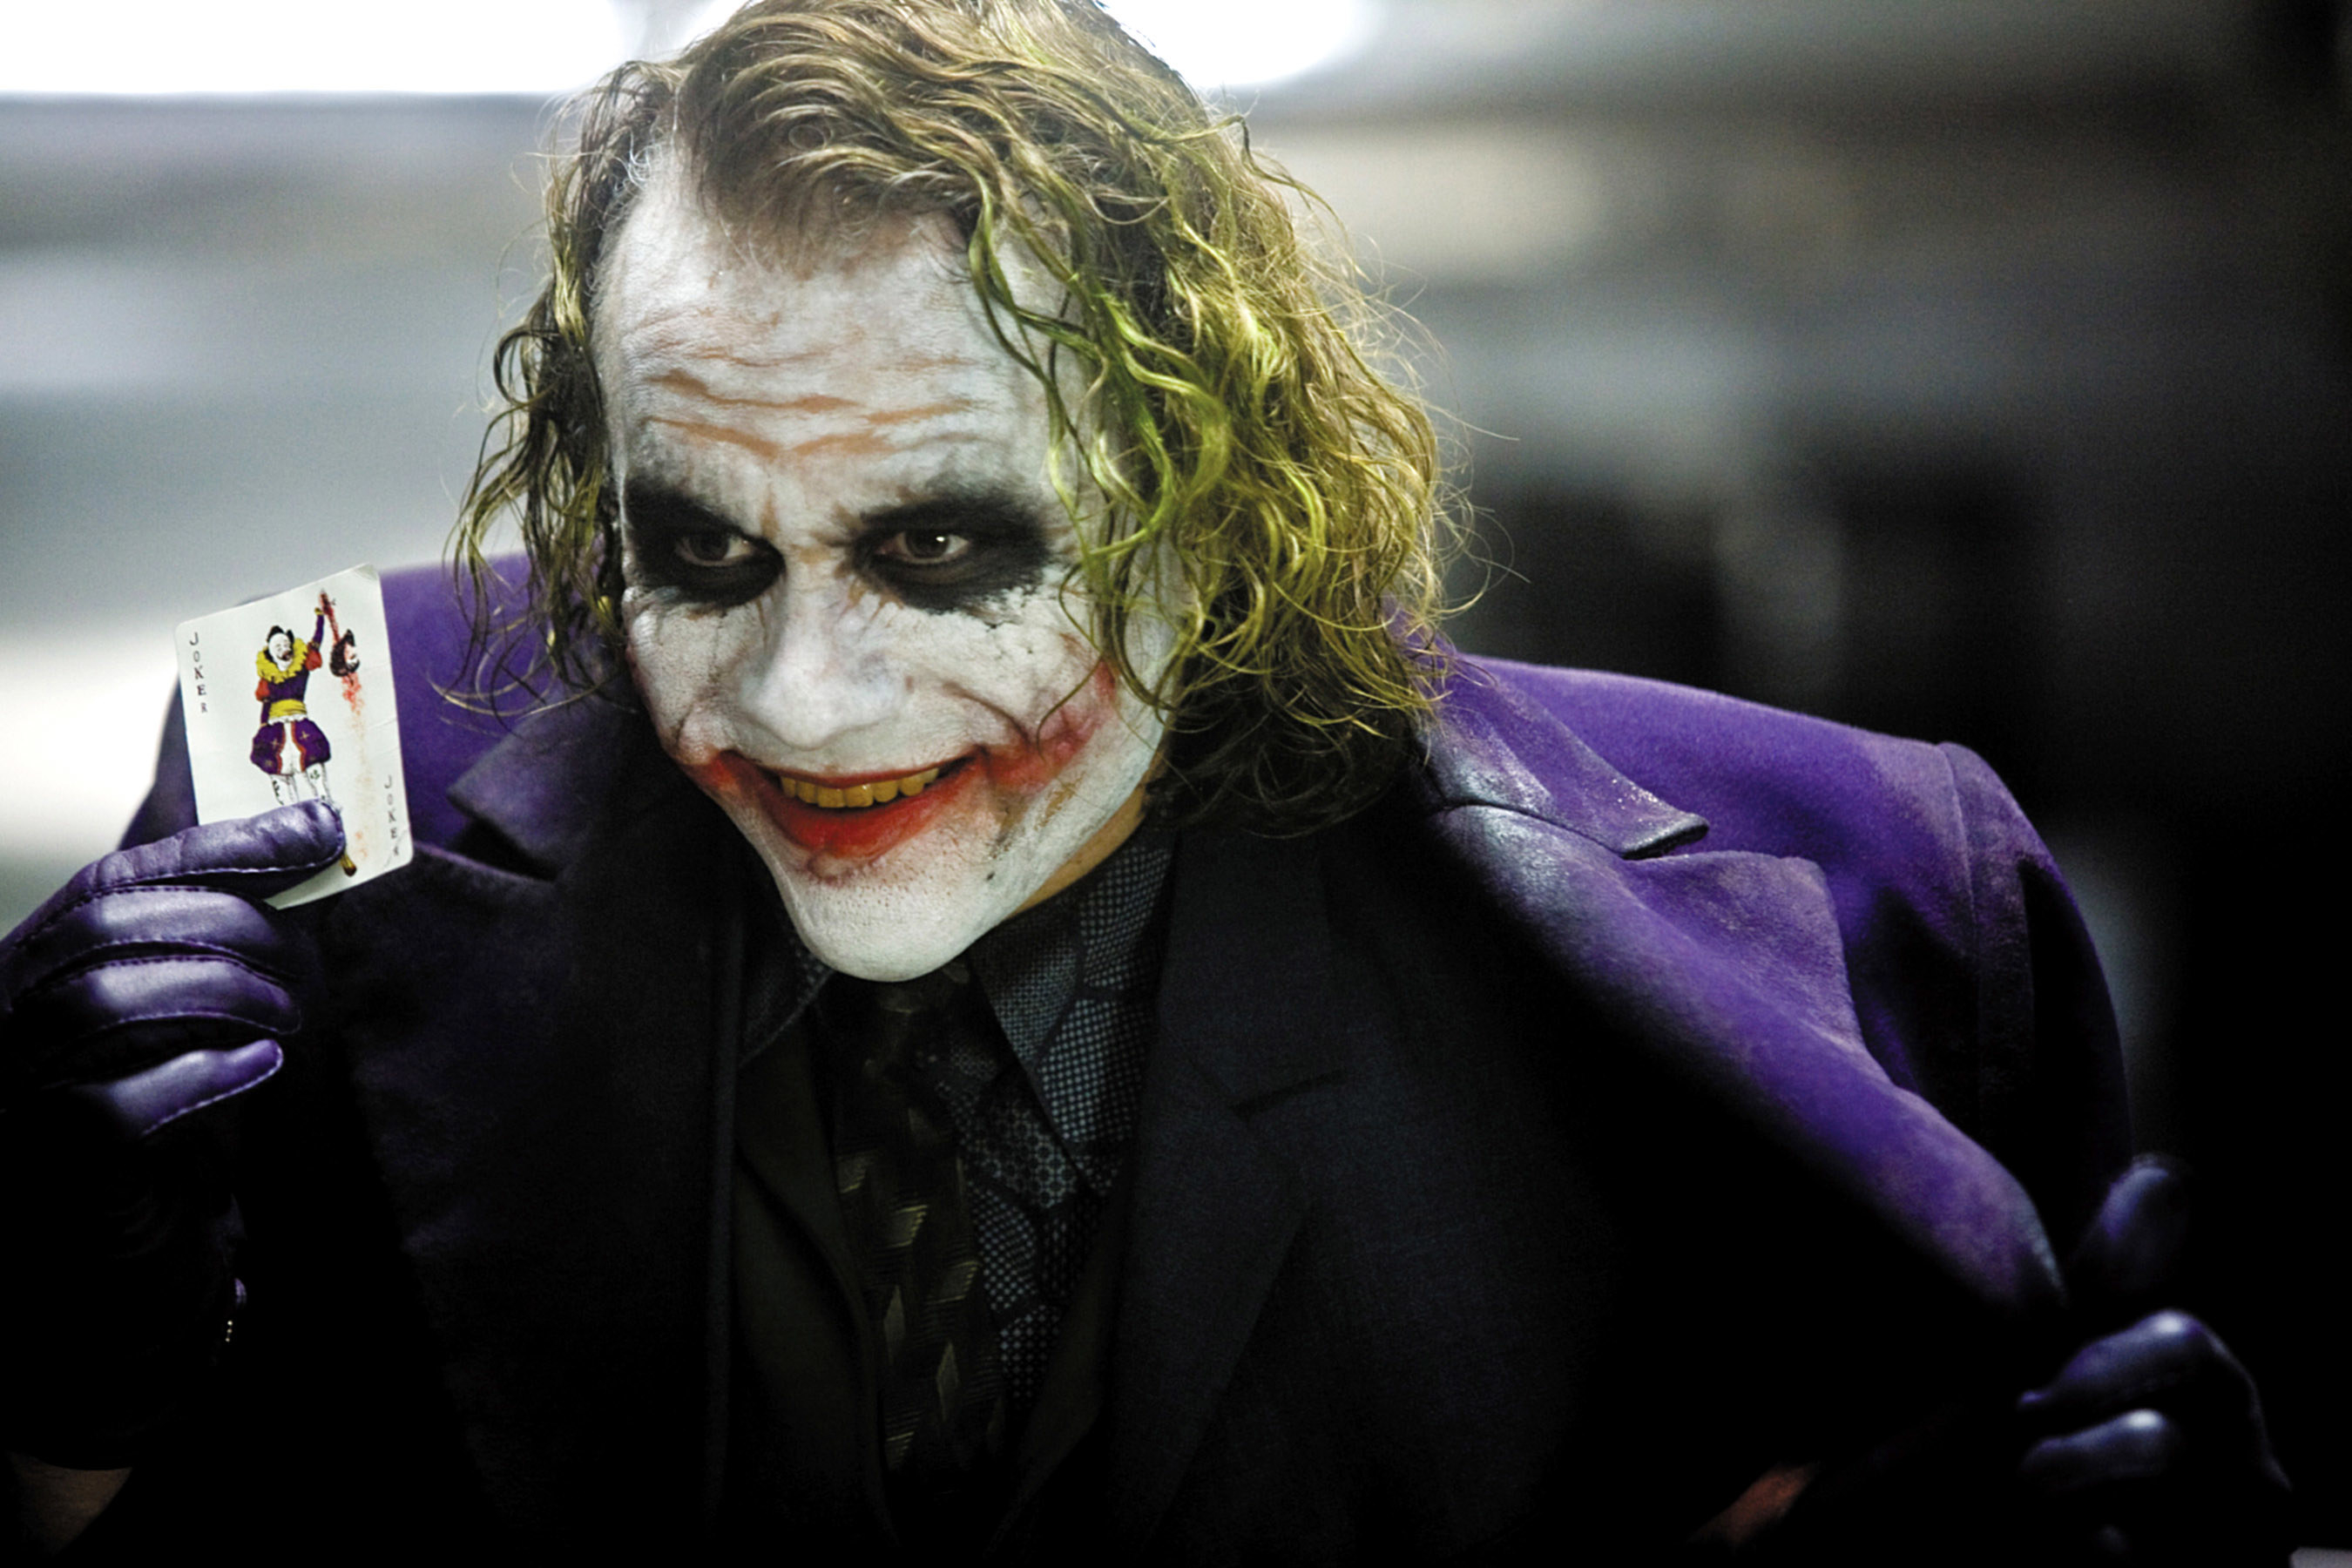 Heath Ledger as the Joker holding up a Joker card